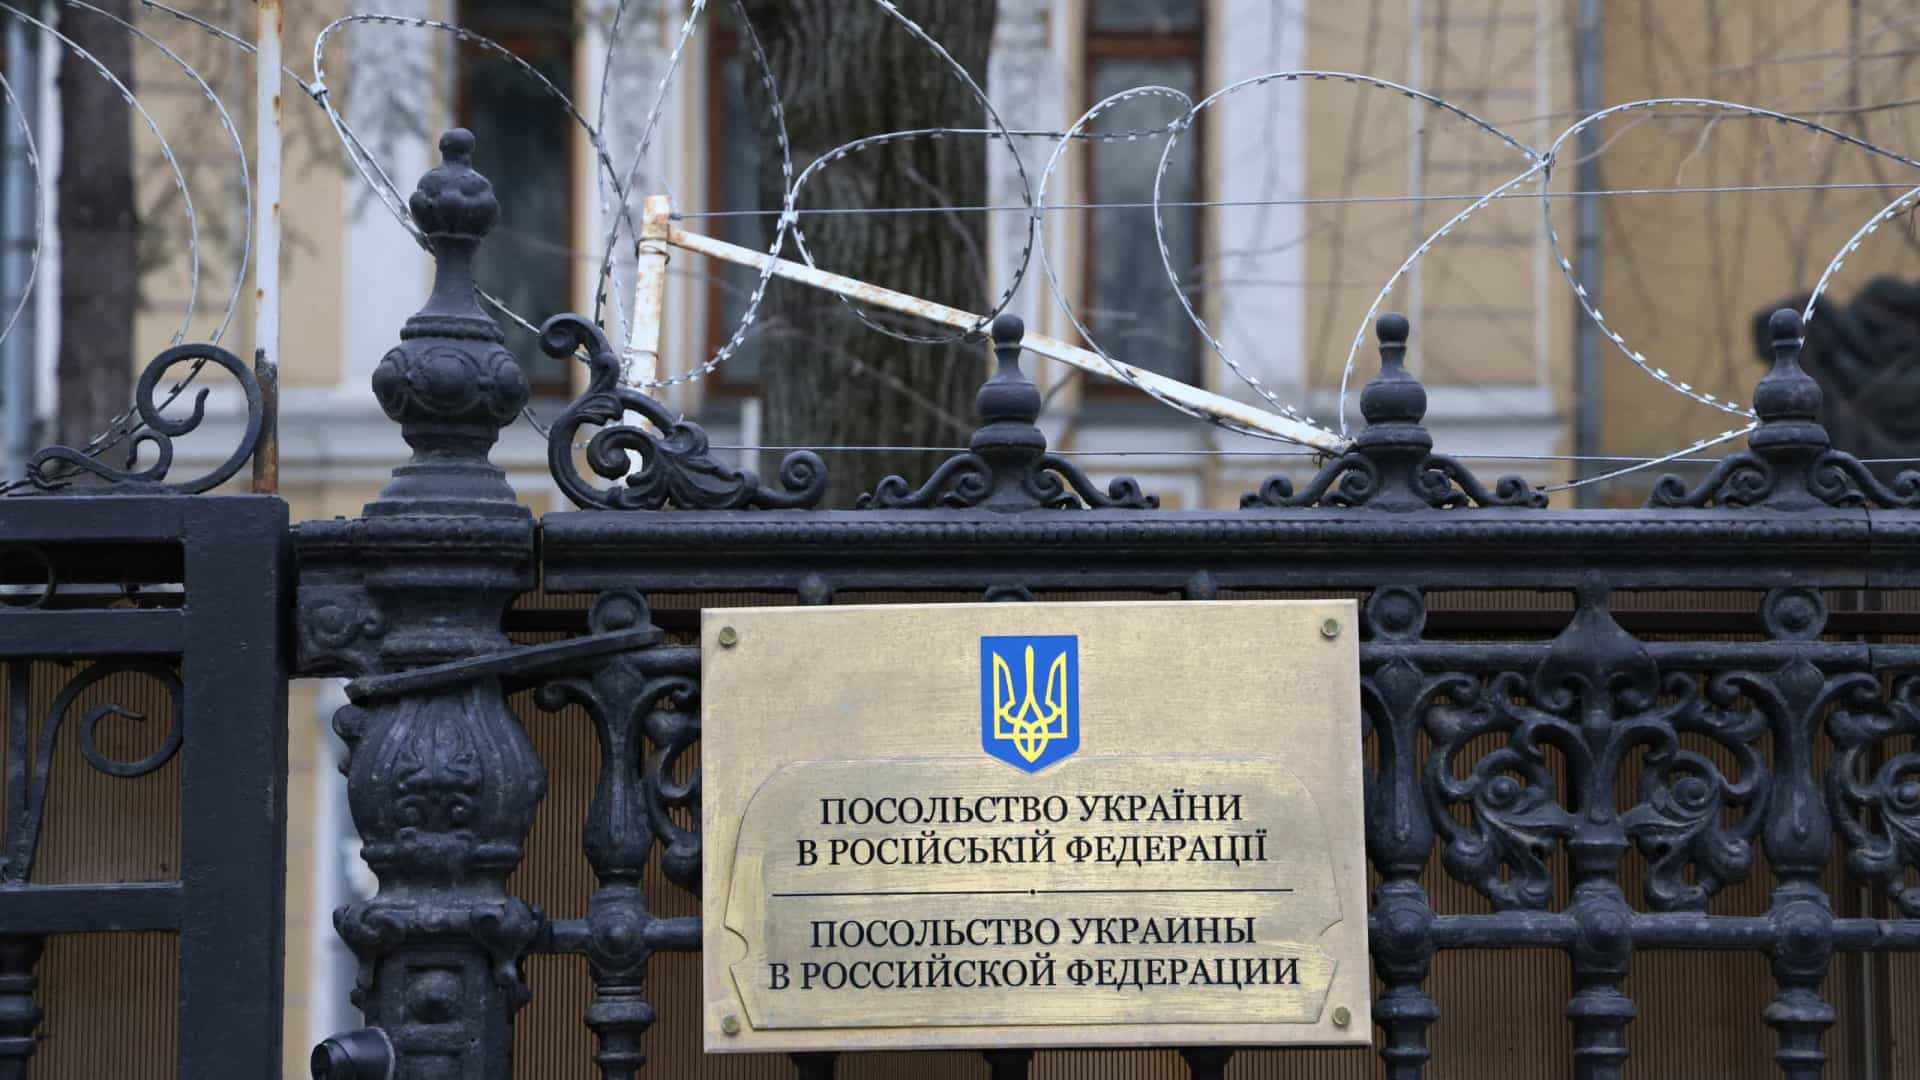 Governo ucraniano evacua embaixada em Moscovo